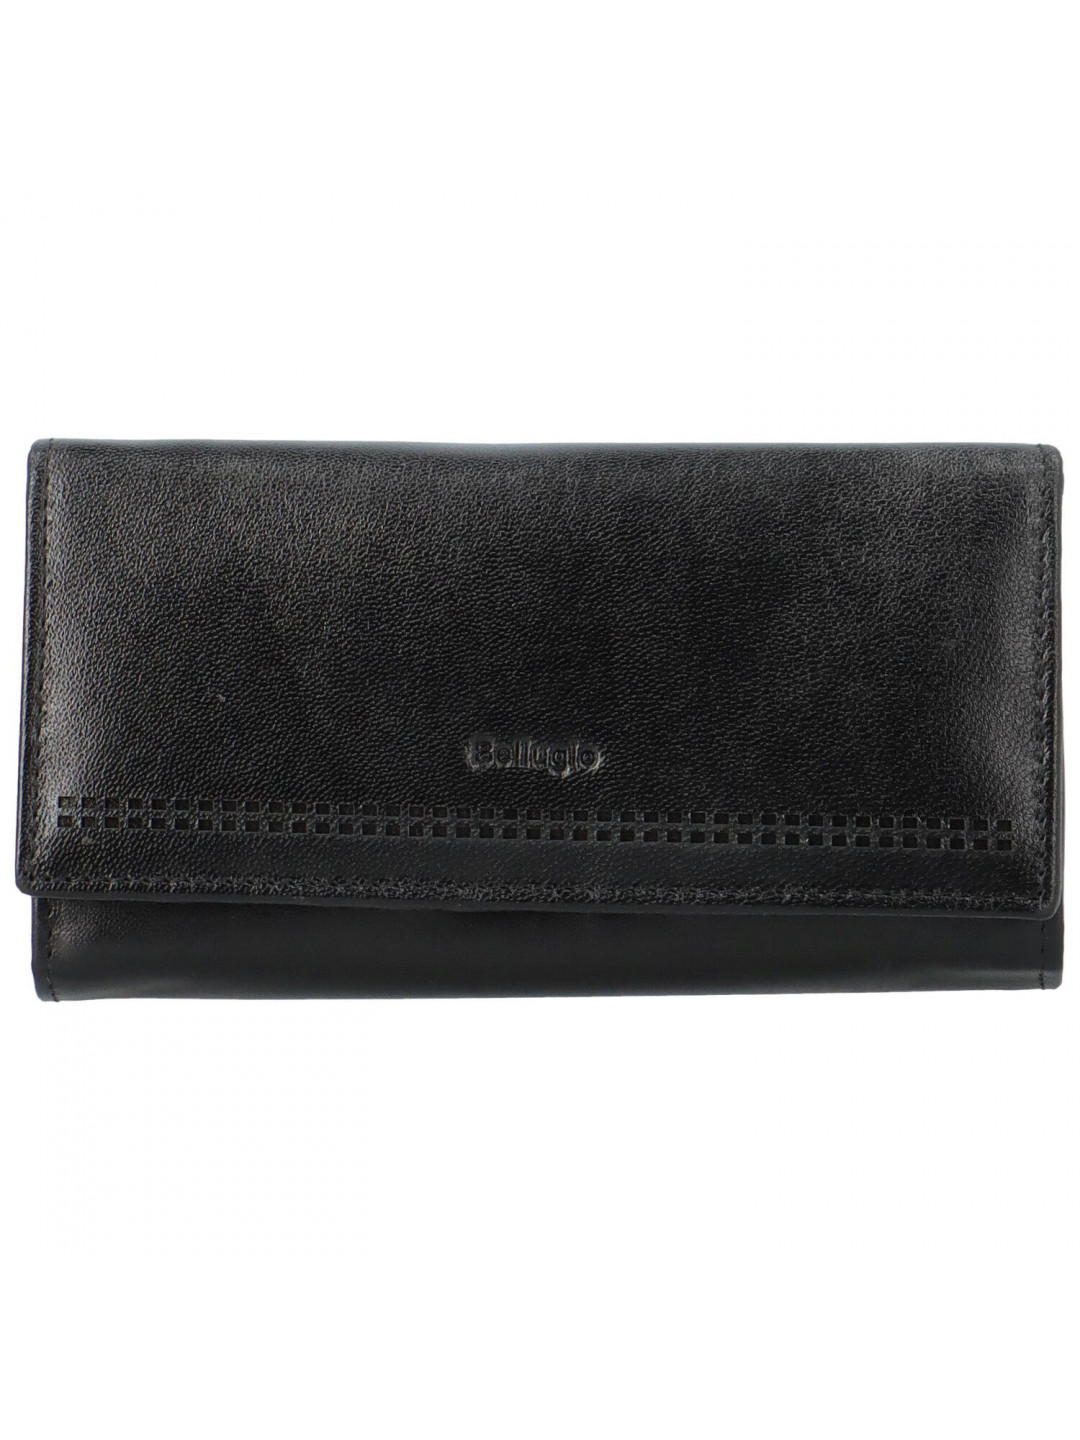 Dámská kožená peněženka Bellugio Nariela černá